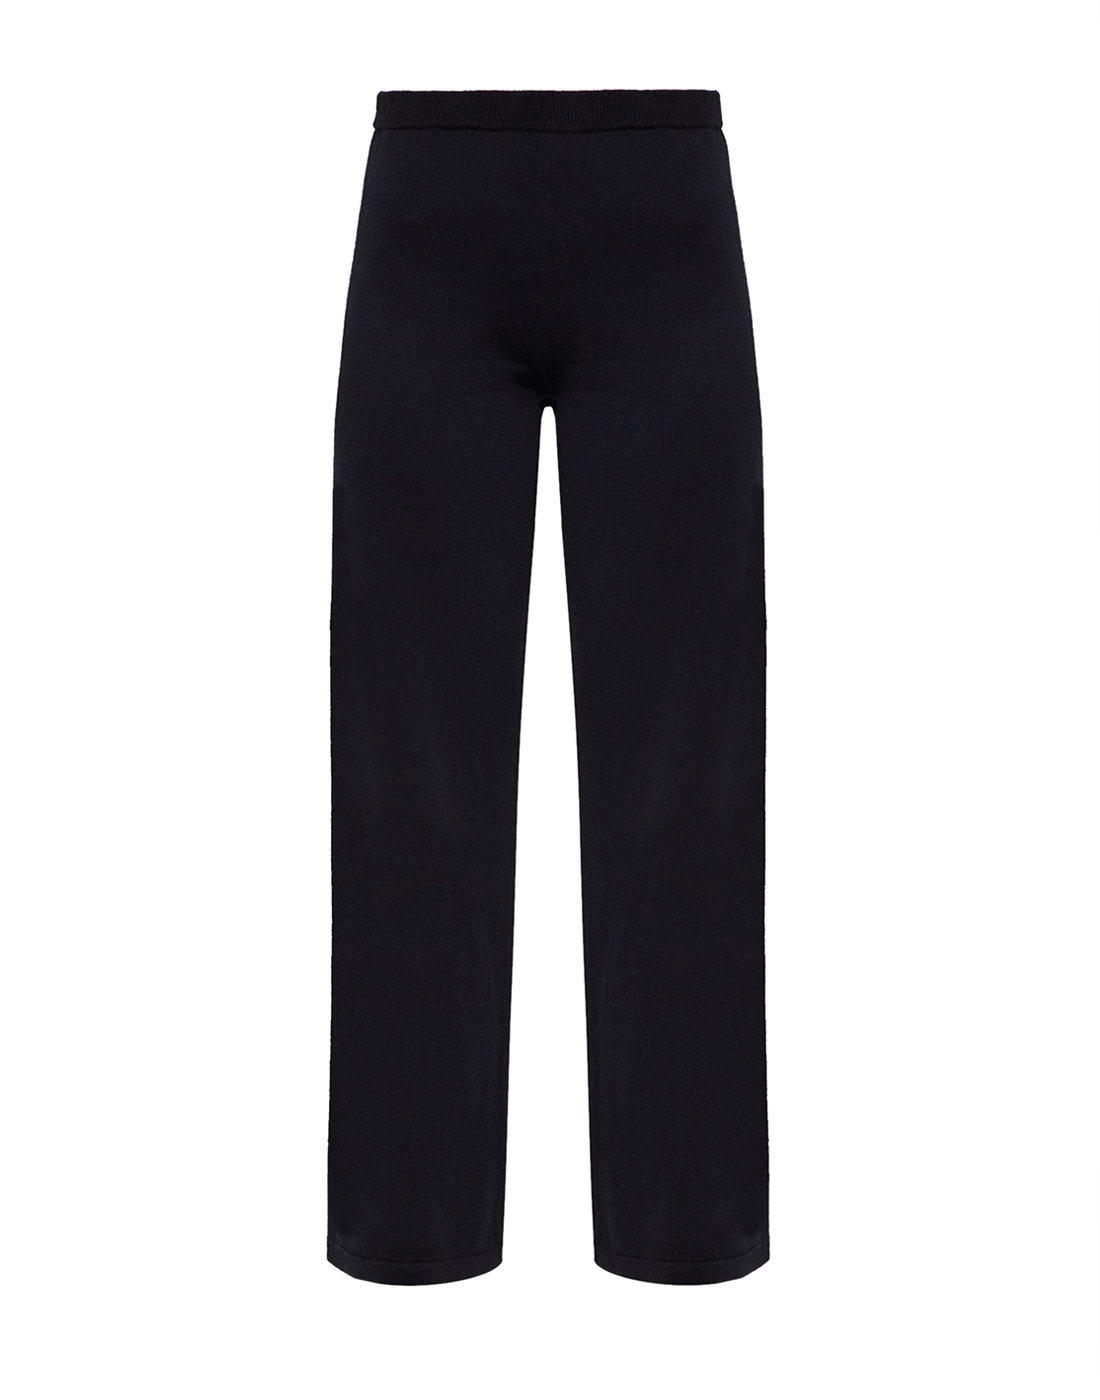 Женские черные шерстяные брюки Falke Fashion S64236/3000-1